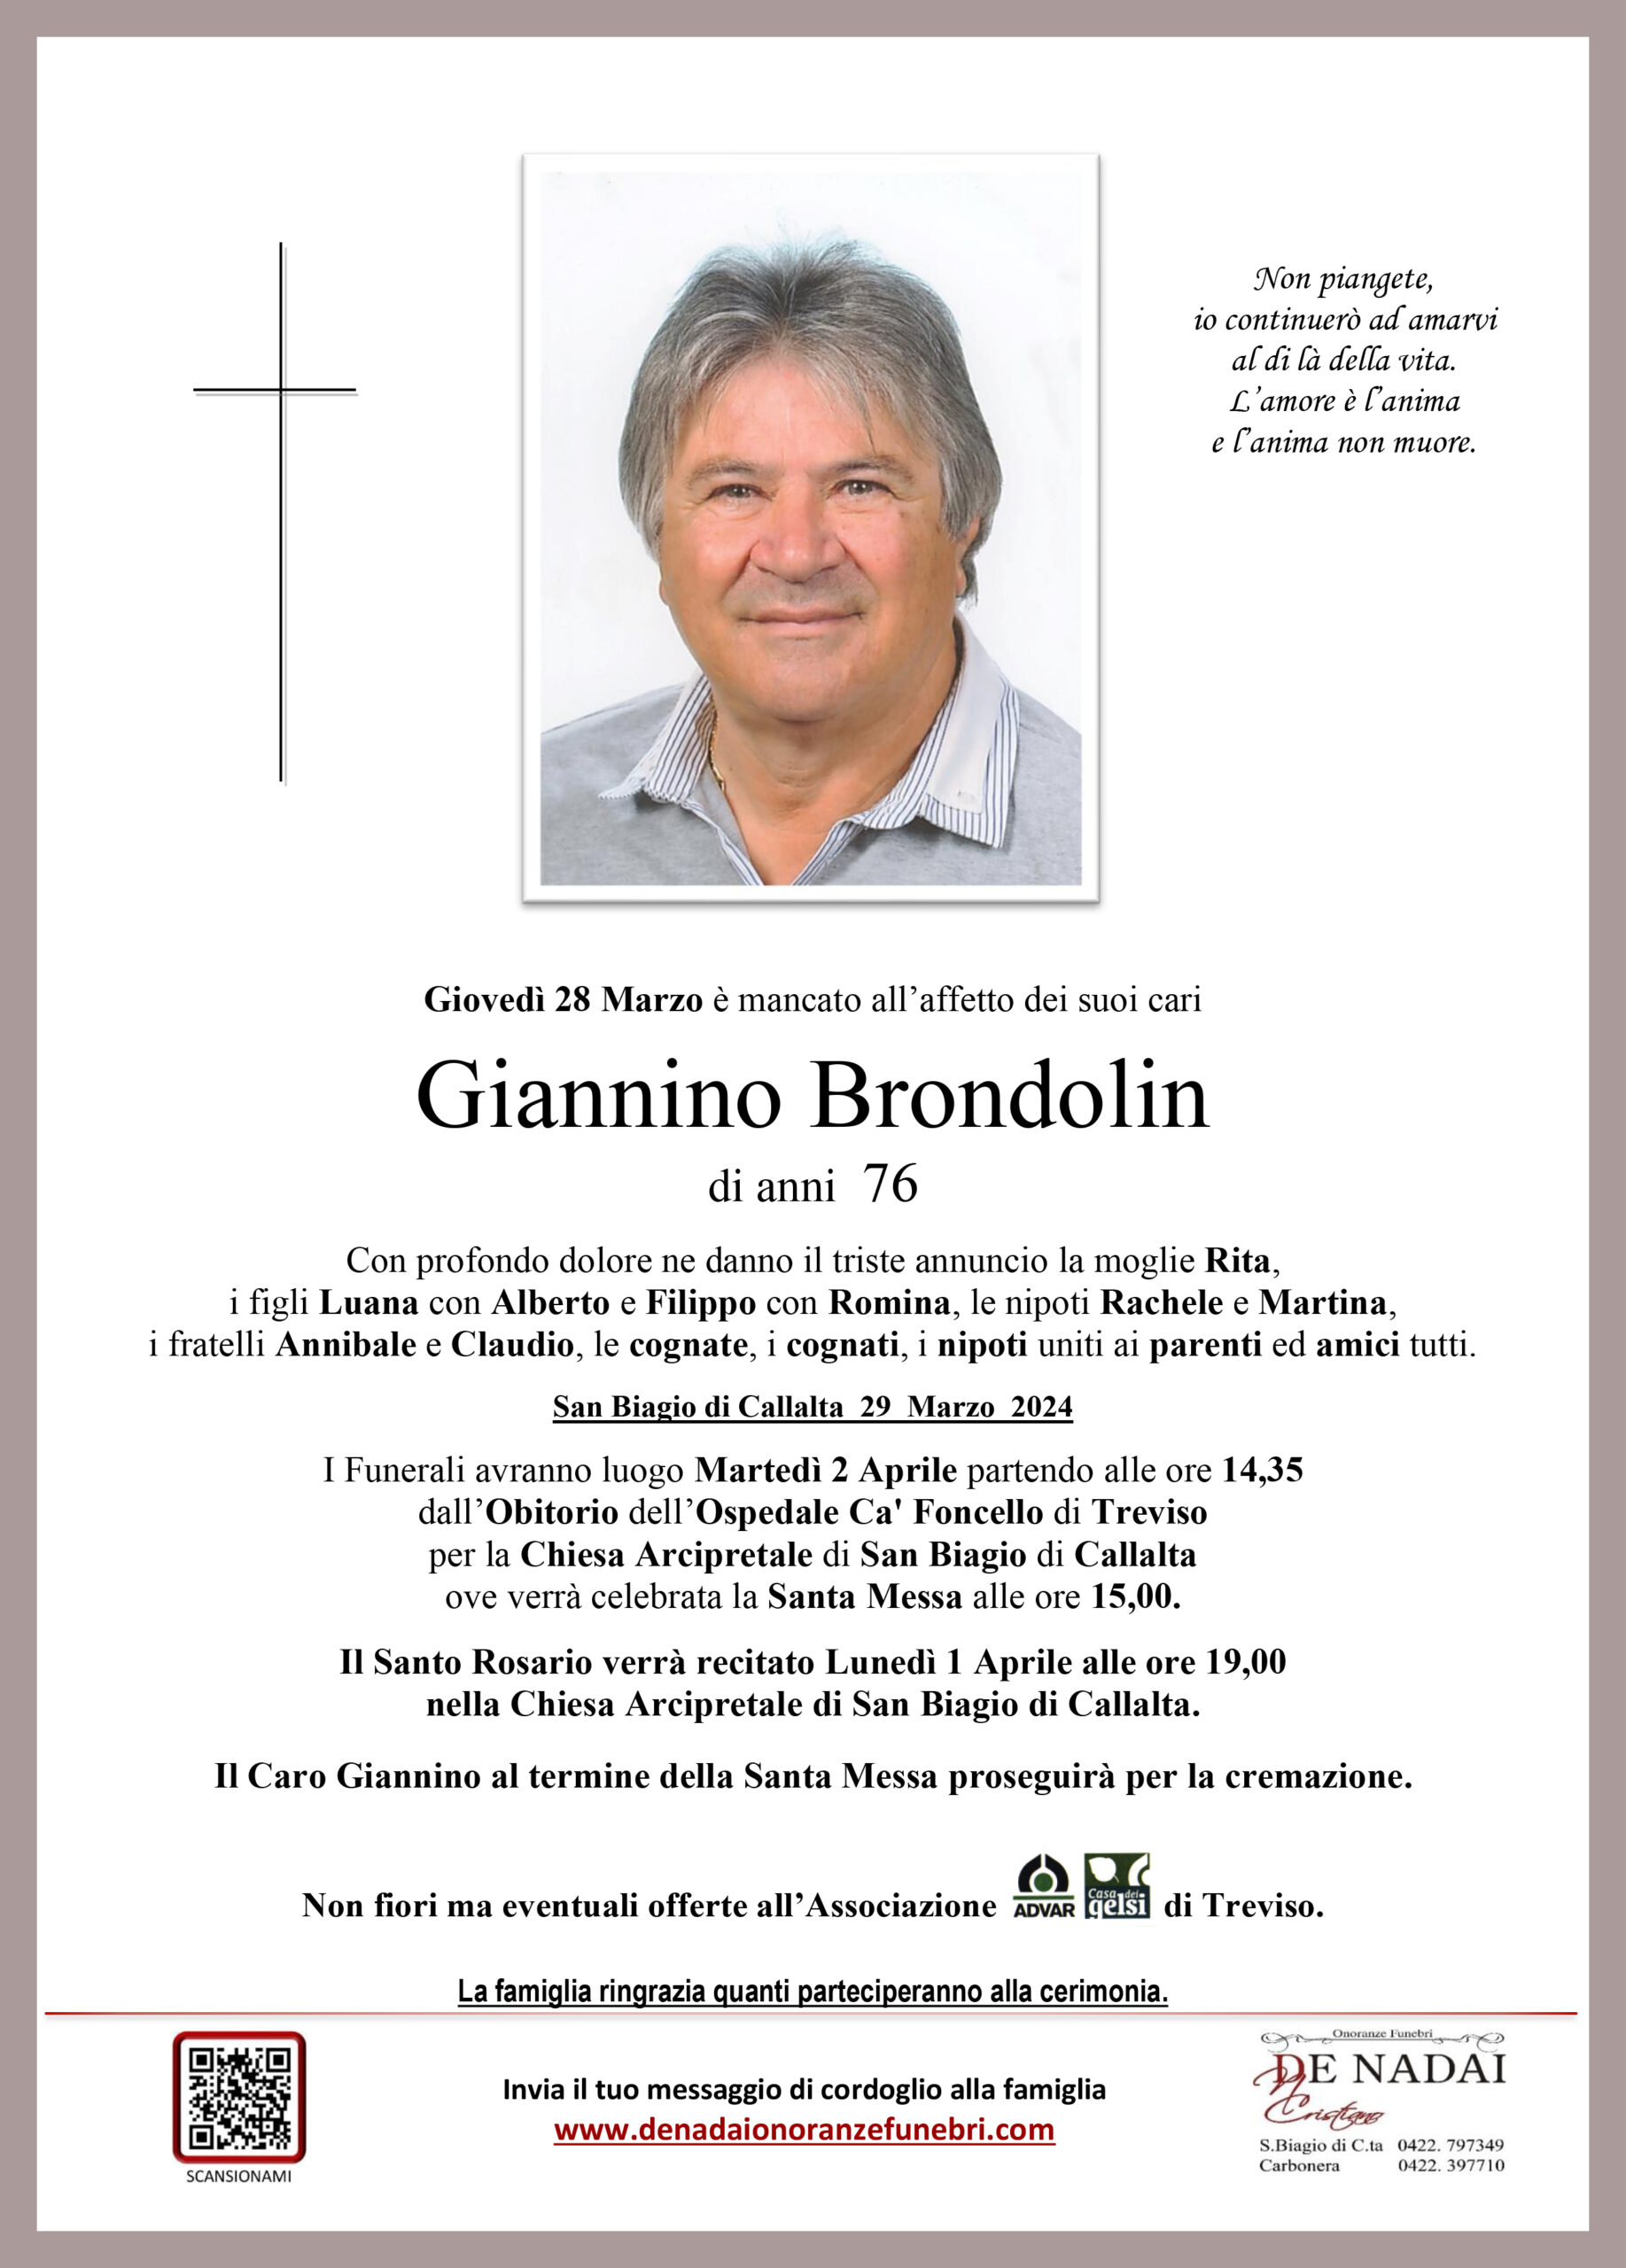 Brondolin Giannino